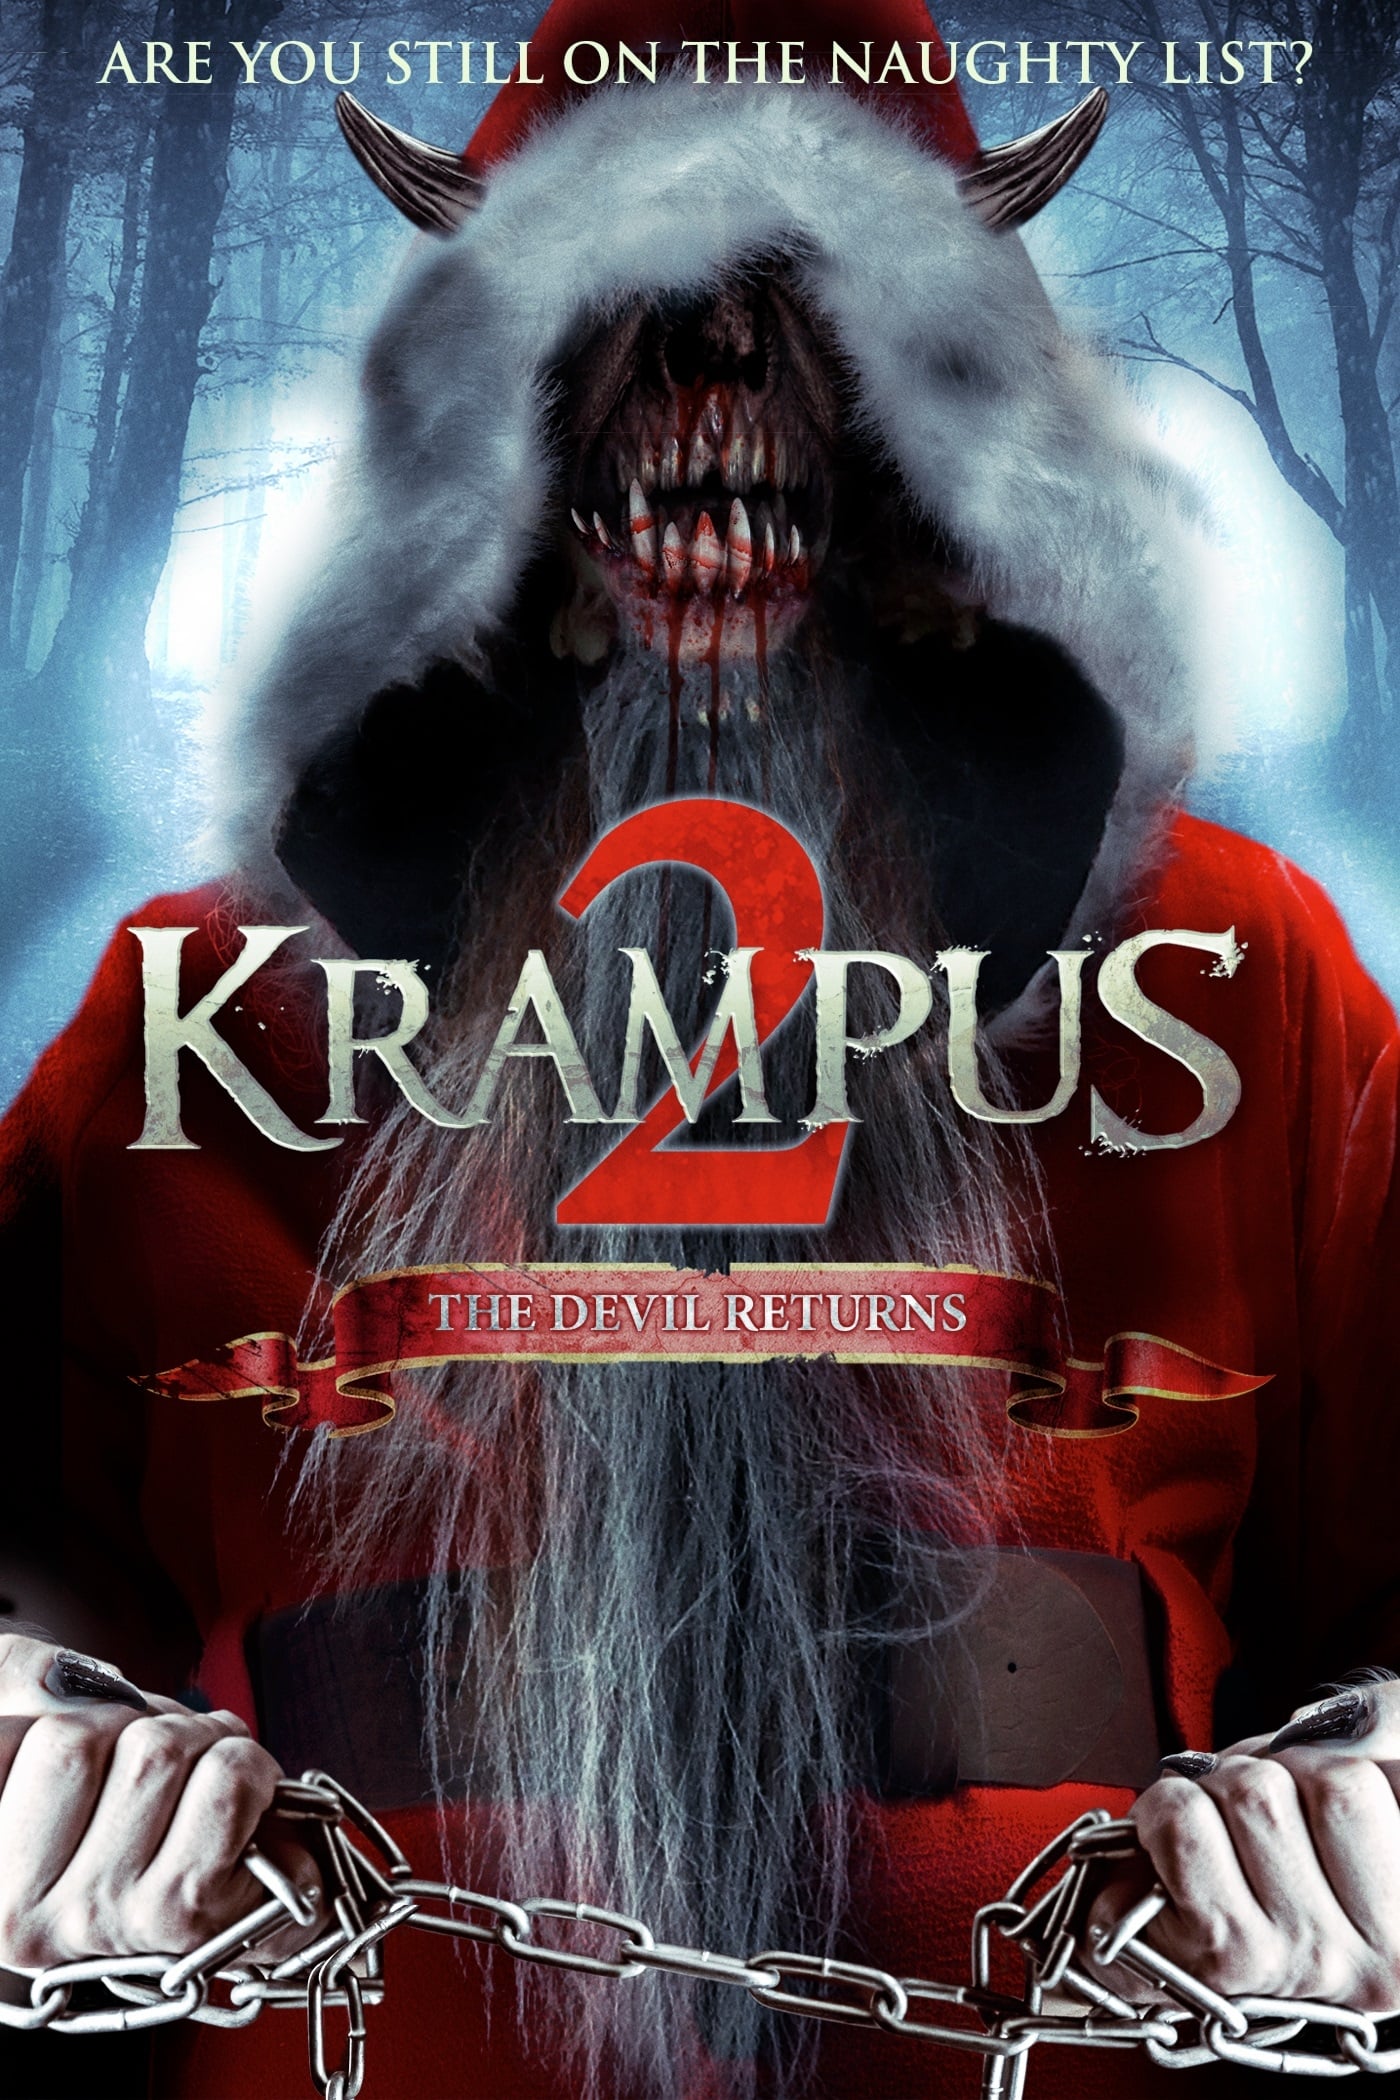 Ác Mộng Đêm Giáng sinh 2 - Krampus 2 (2016)